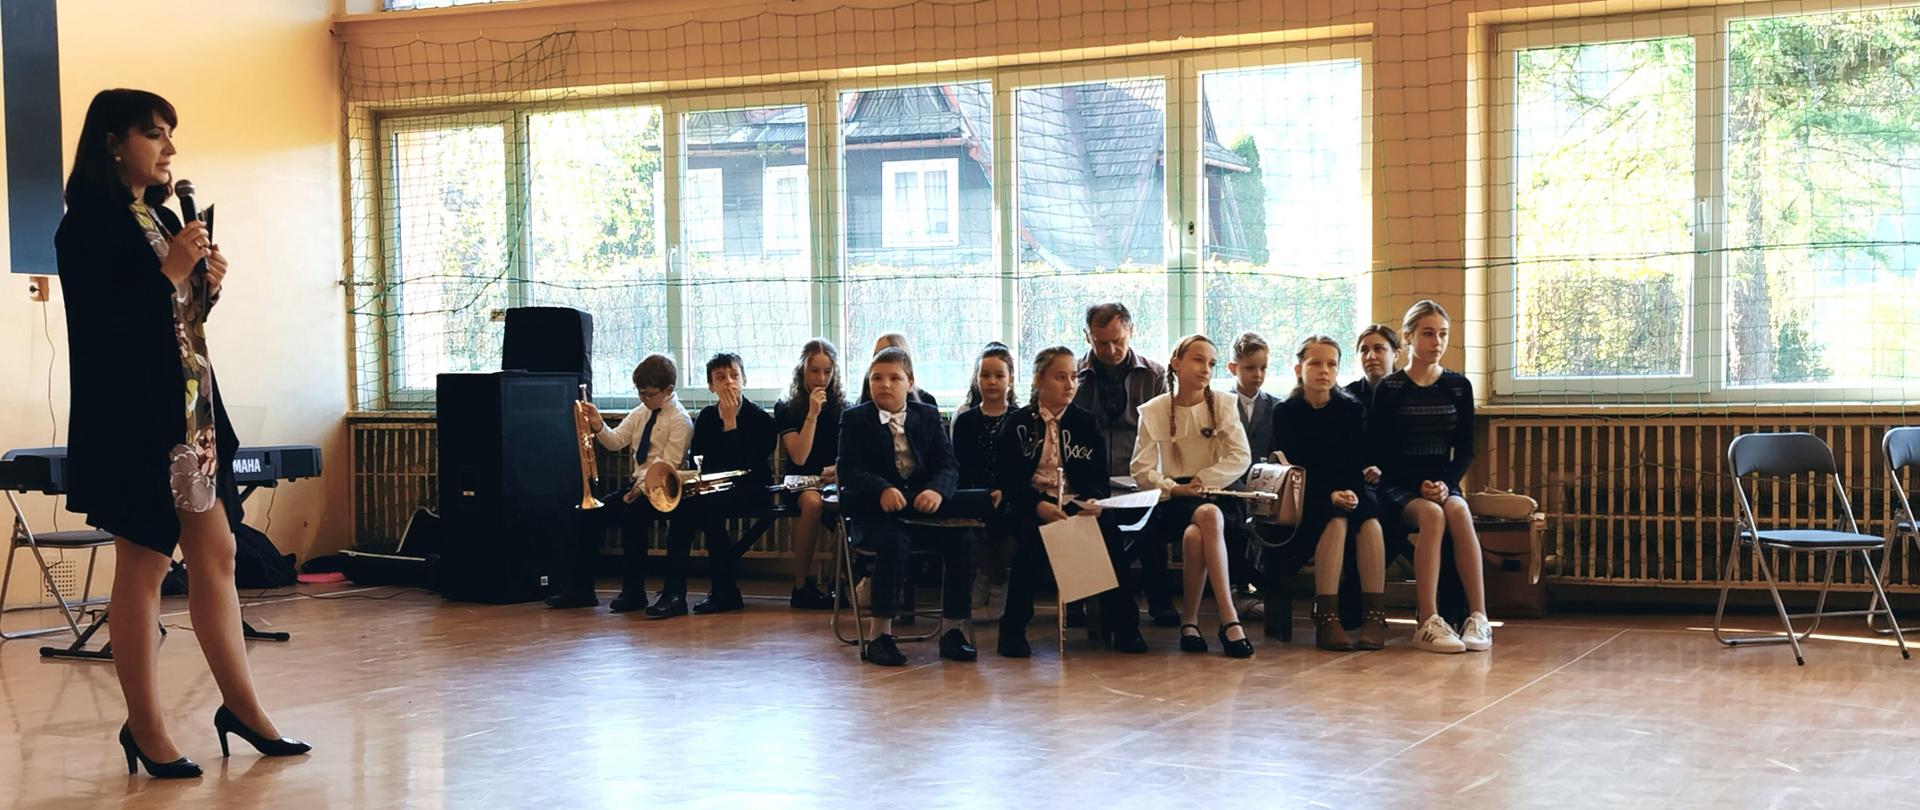 Sala gimnastyczna. Przed dziećmi nauczycielka szkoły muzycznej opowiada o zajęciach w szkole muzycznej, po prawej stronie uczniowie szkoły muzycznej siedzą na krzesłach w rękach trzymają instrumenty czekają na swój występ.